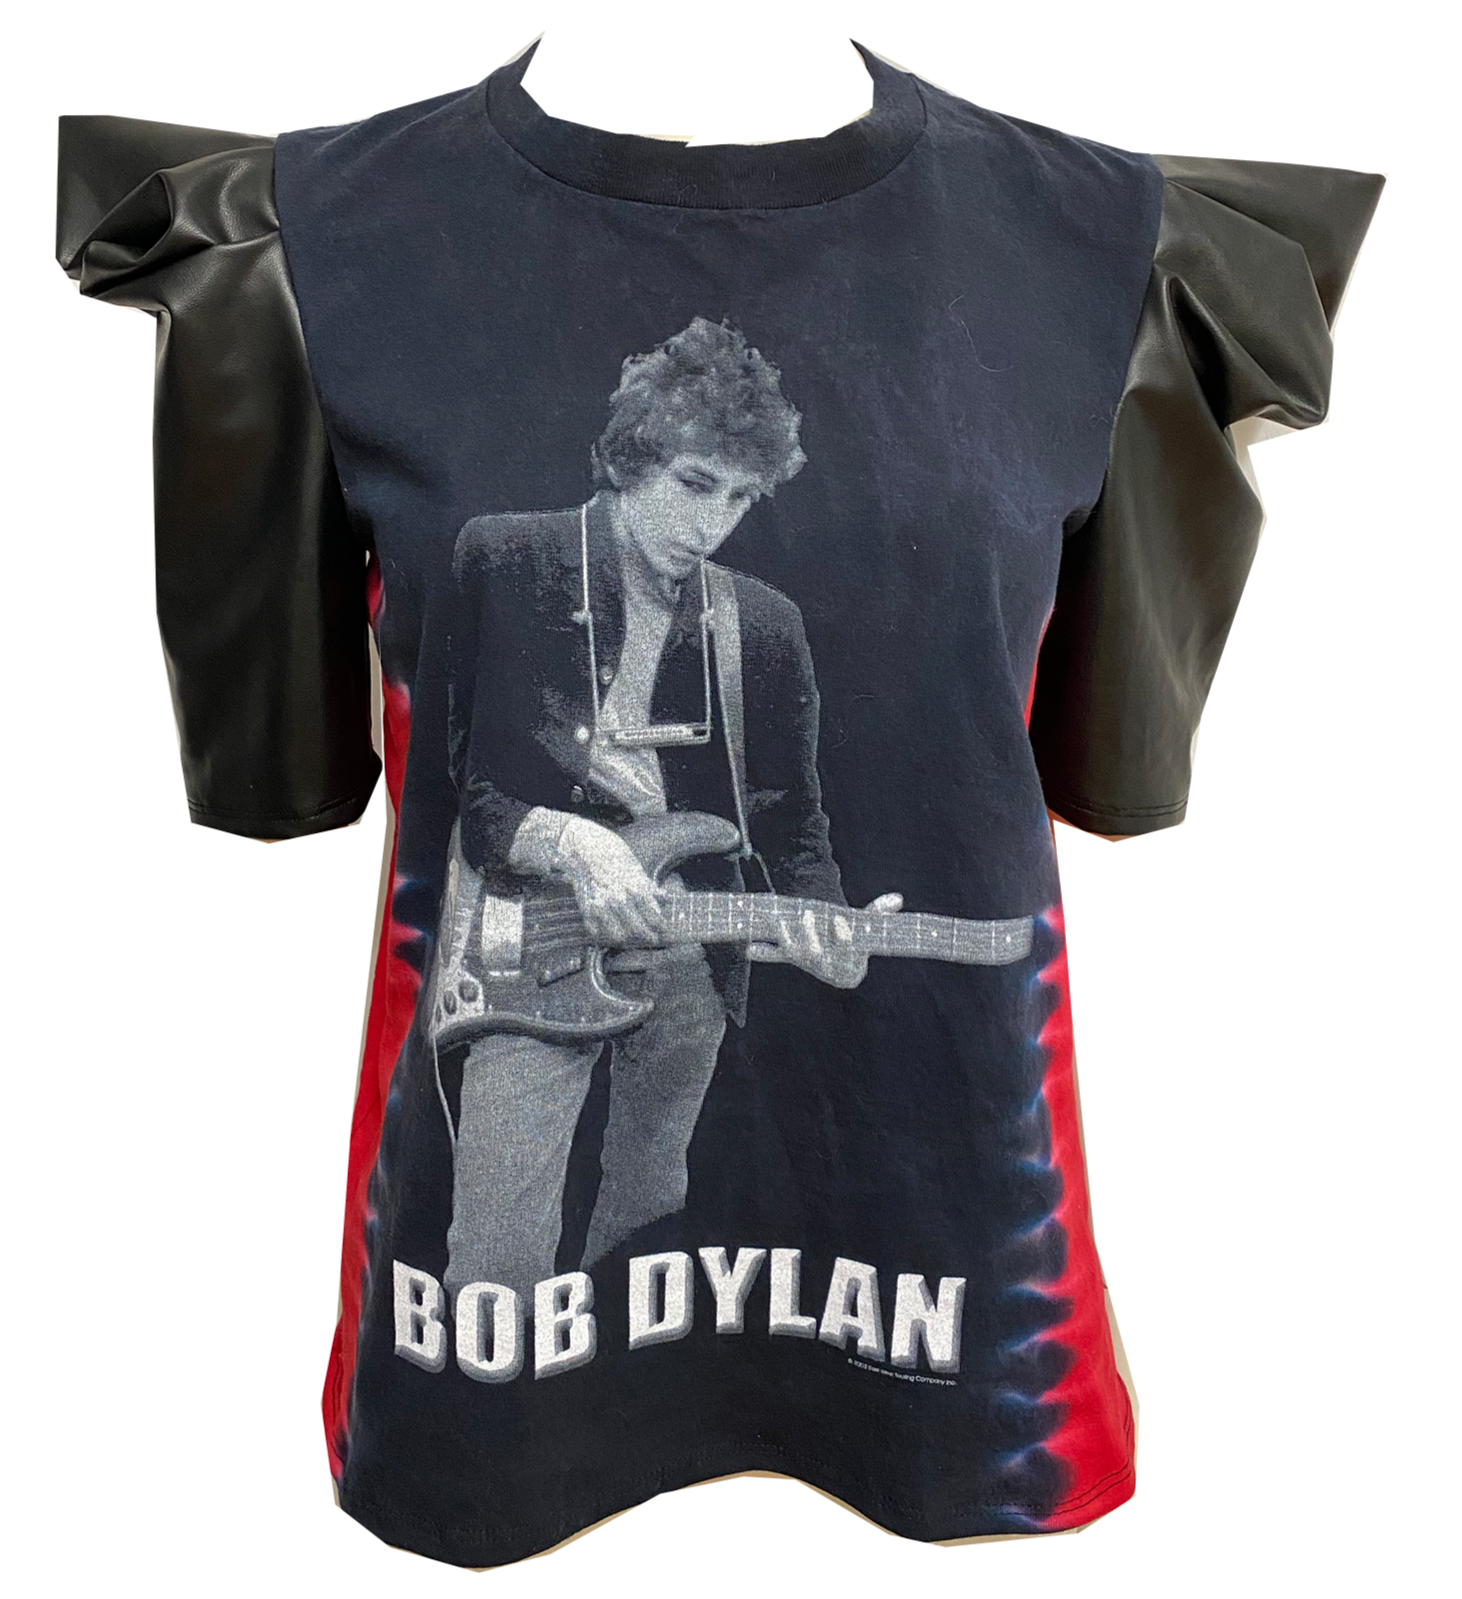 Bob Dylan “Fly”